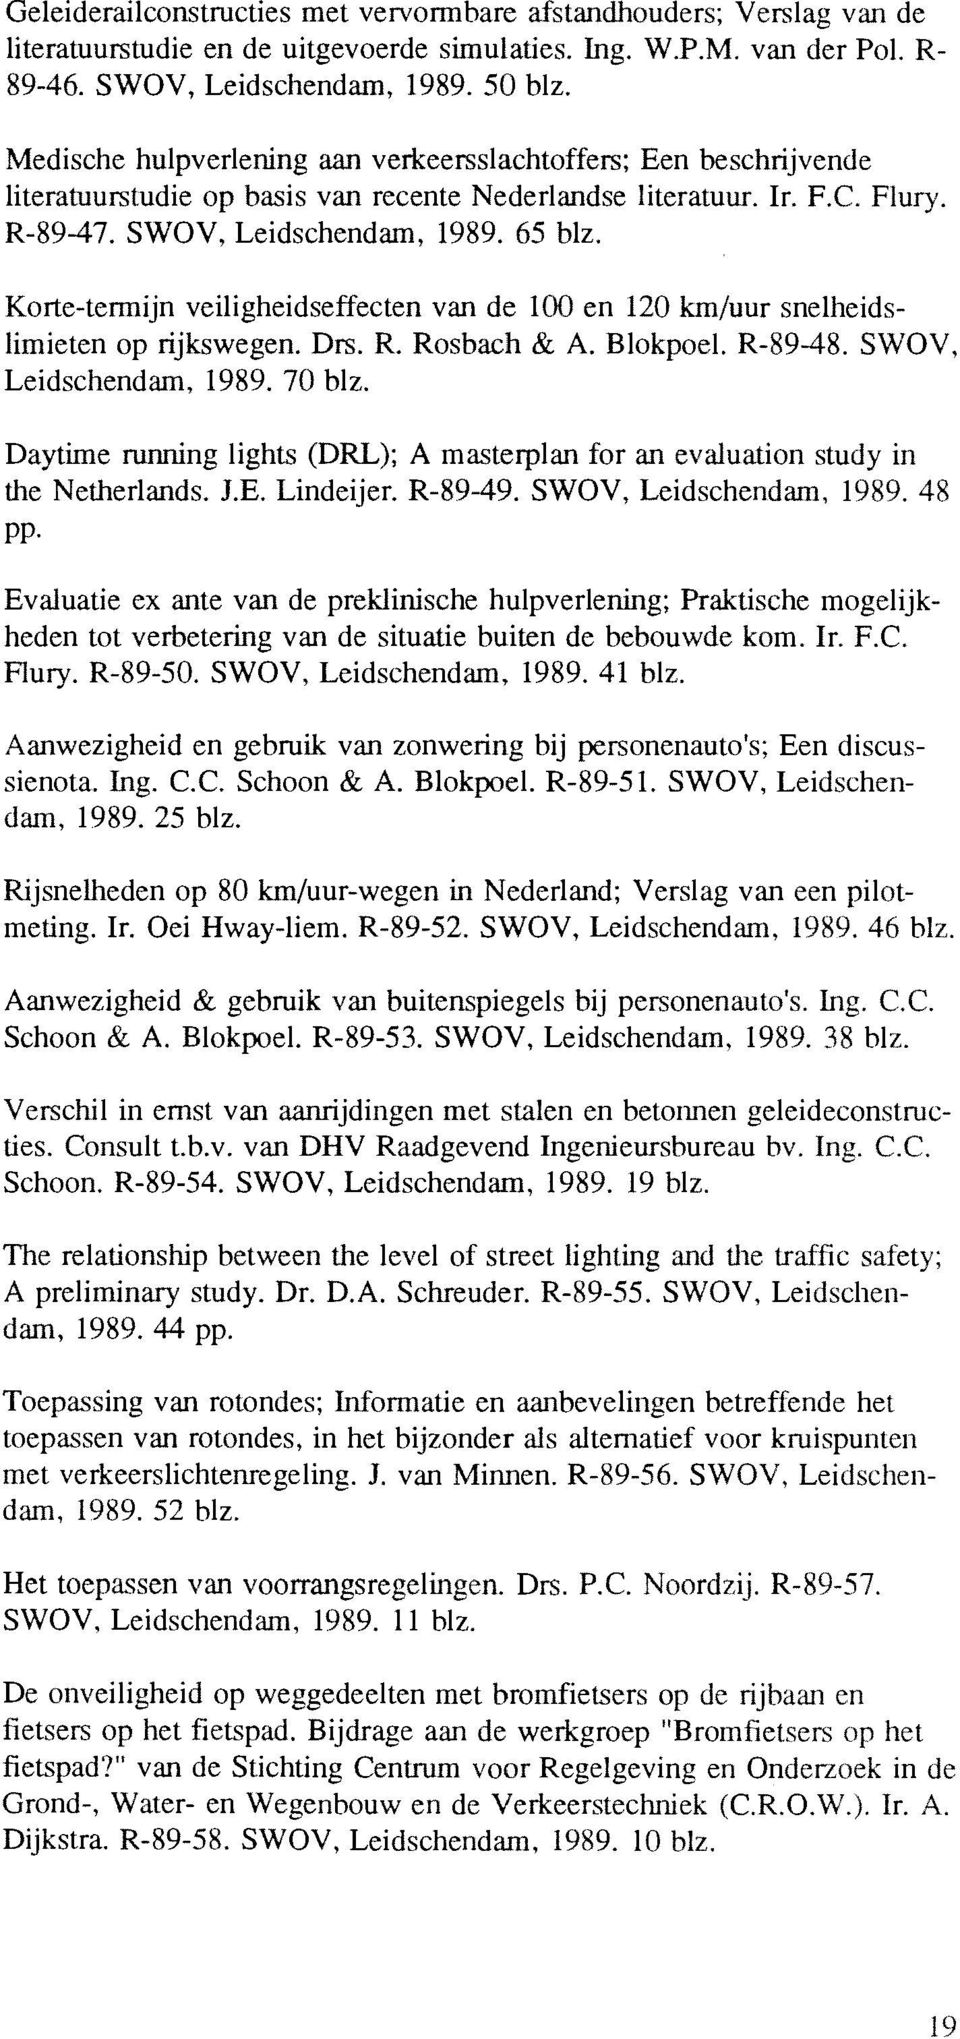 Korte-tennijn veiligheidseffecten van de 100 en 120 km/uur snelheidslimieten op rijkswegen. Drs. R. Rosbach & A. Blokpoel. R-89-48. SWOV, Leidschendam, 1989. 70 blz.